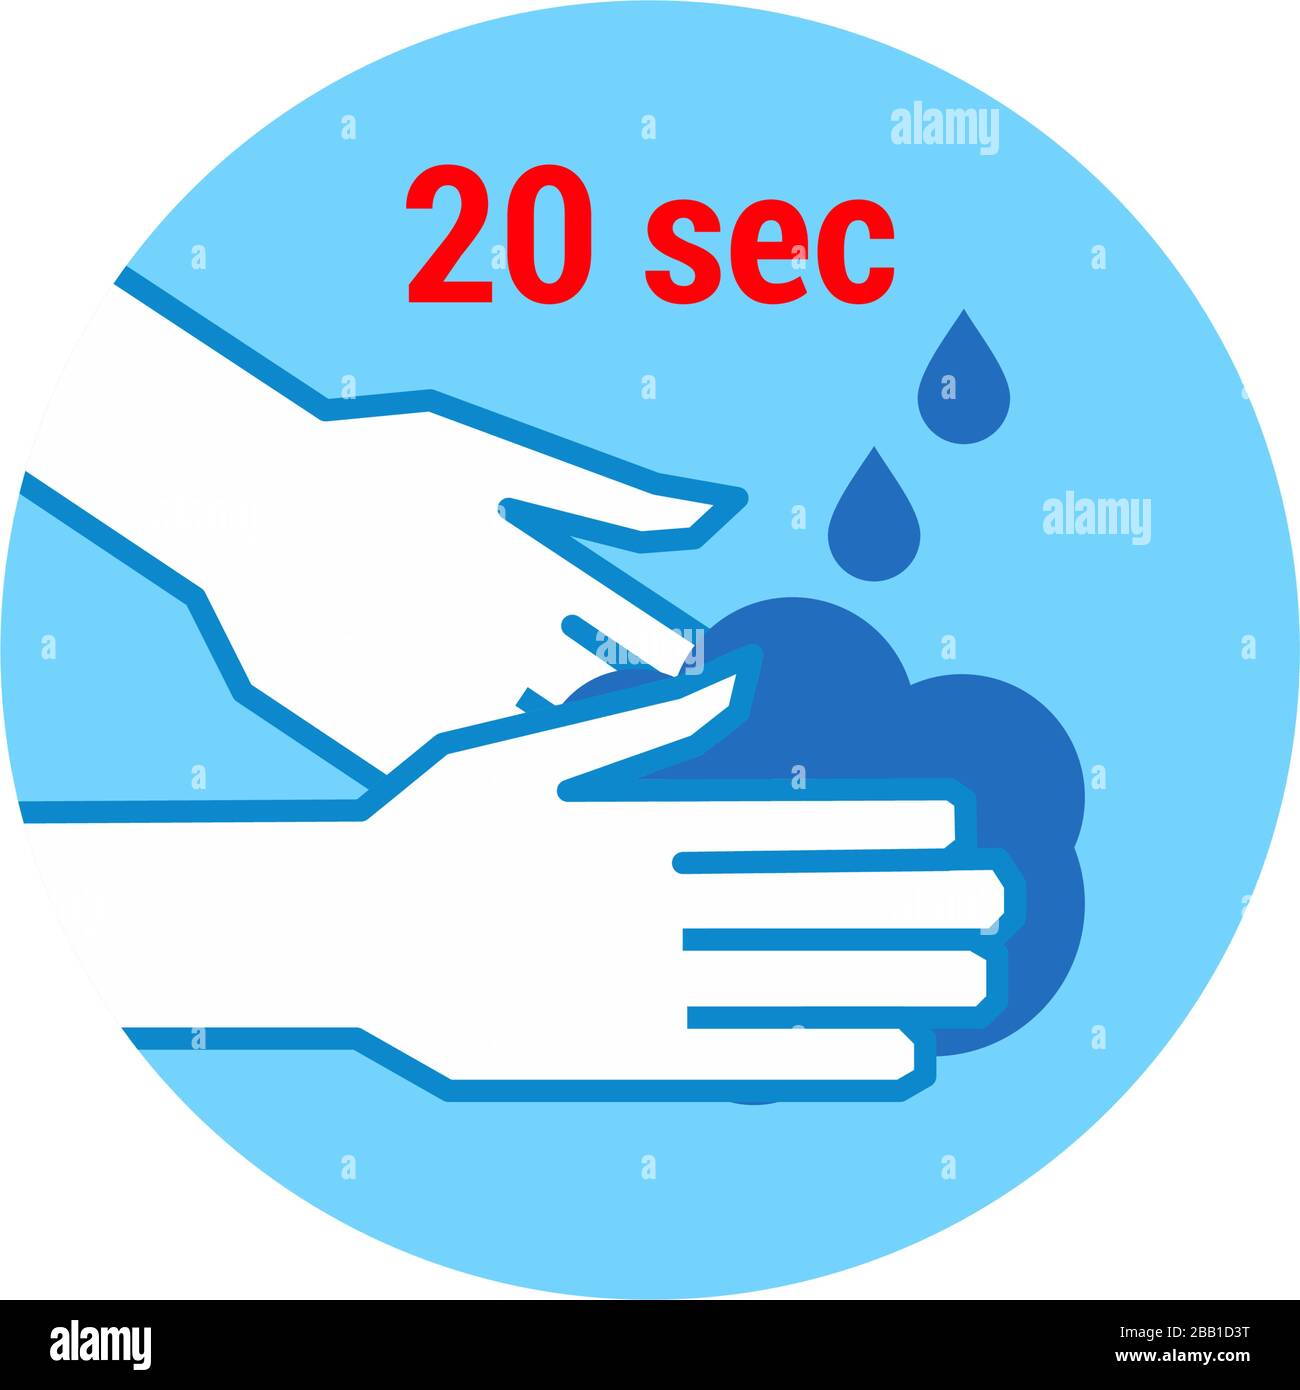 Covid-19 oder Coronavirus 2019-nCoV Krankheitsprävention Infografisches Symbol, medizinische und medizinische Konzeptvektor-Illustration. Waschen Sie sich Ihre Hände für at lea Stock Vektor